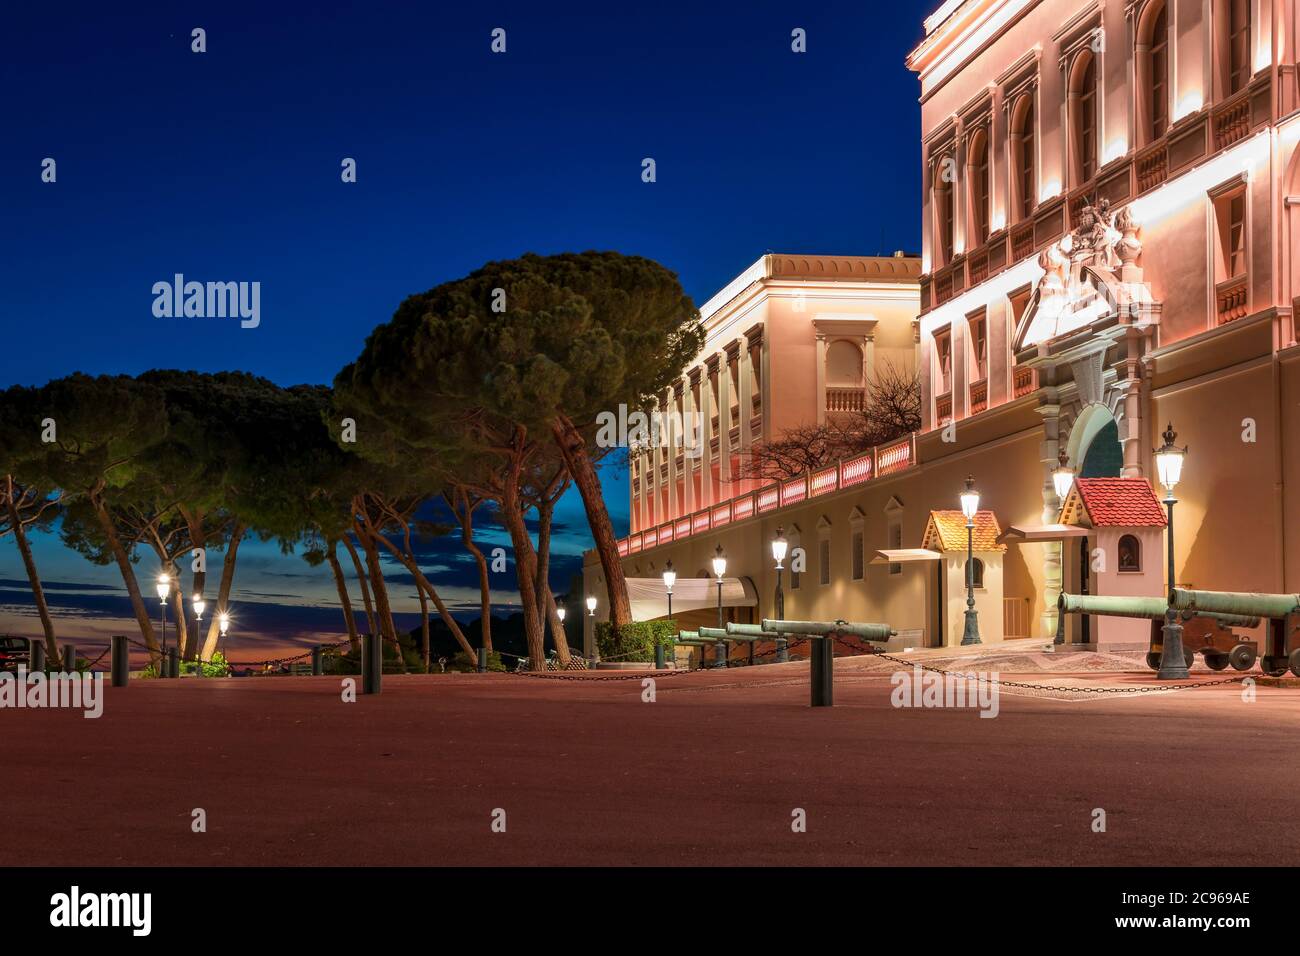 Illuminated Prince's Palace at dusk, Monaco, Cote d'Azur, Europe Stock Photo